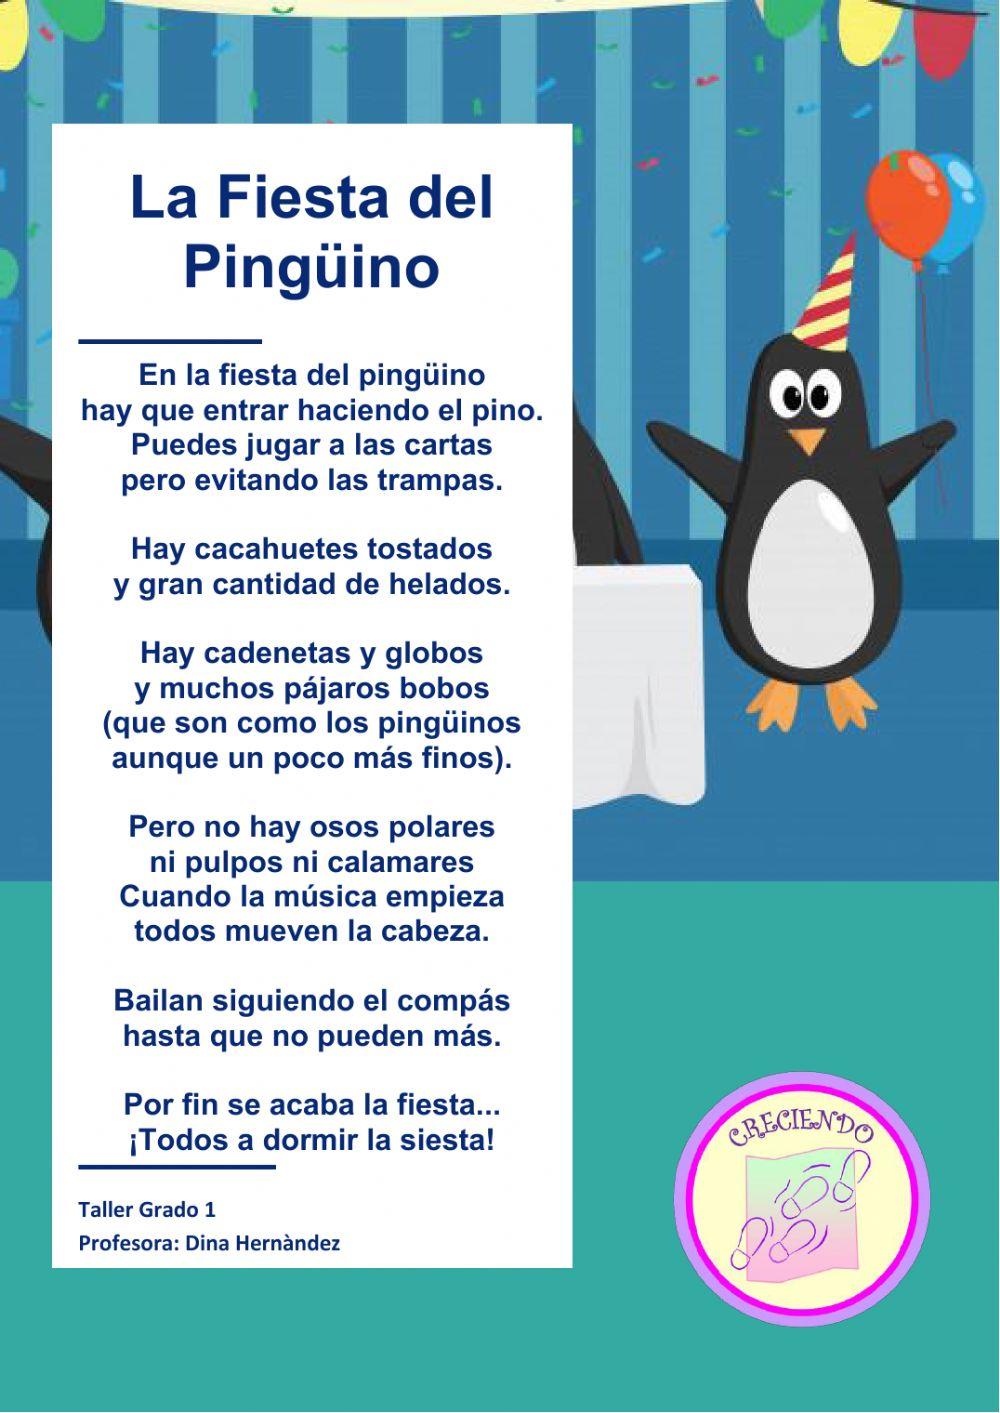 La fiesta del pinguino